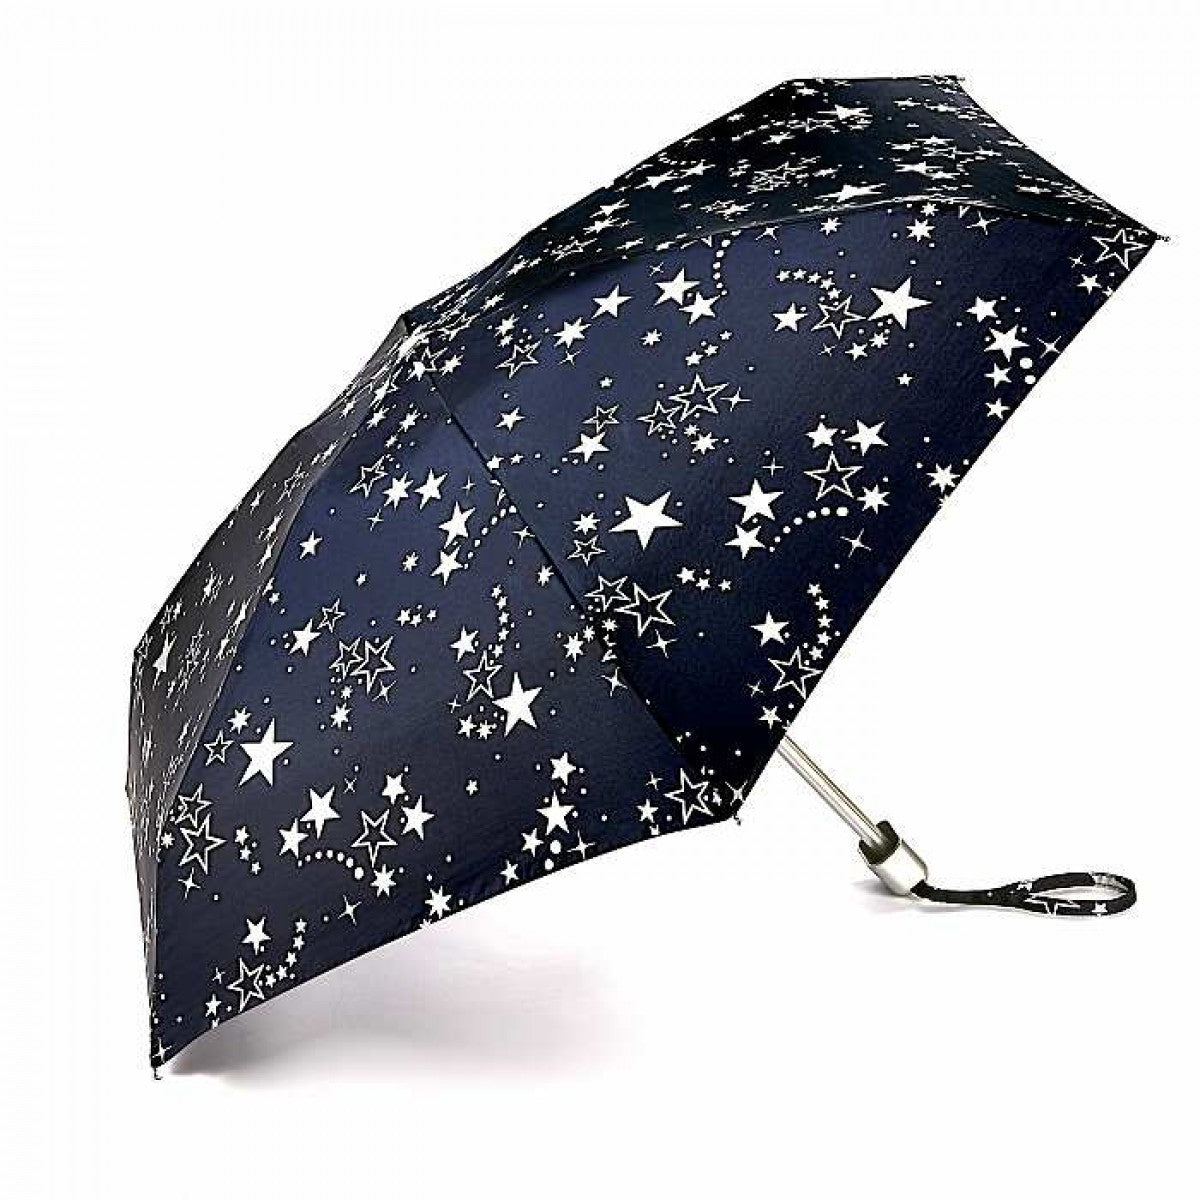 Міні парасолька Fulton L501 Tiny-2 Night Sky (Нічне небо)